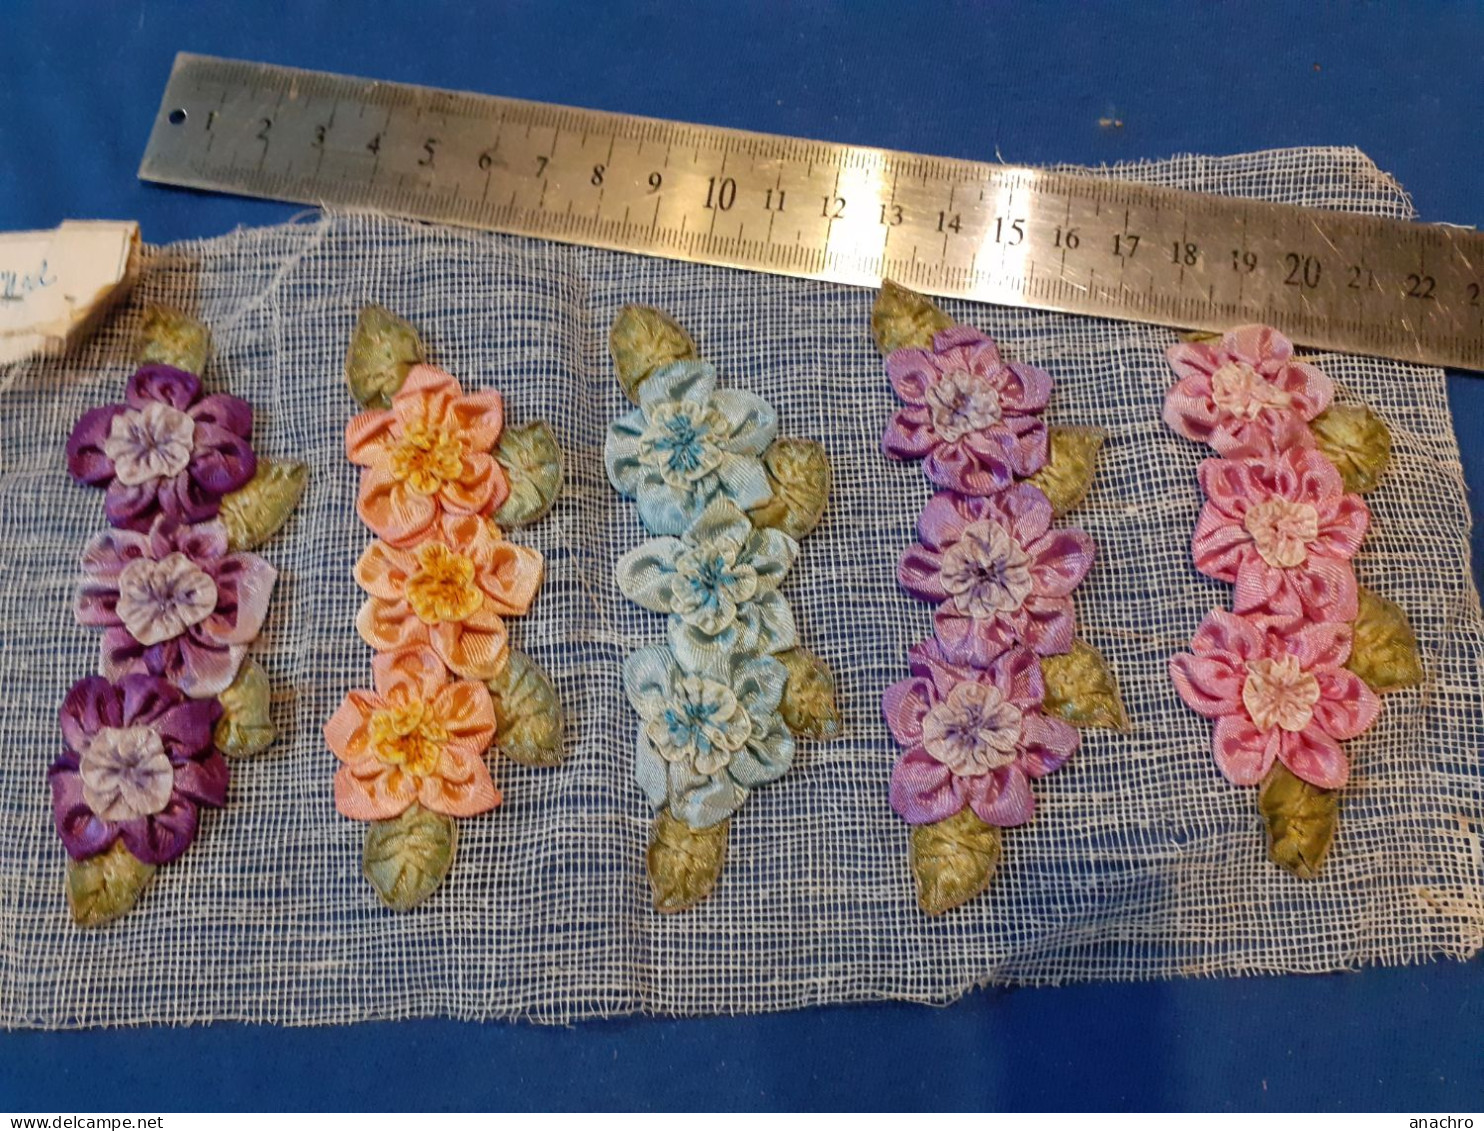 FLEURS BRODERIE à La Main Bouquet De Fleurs à Coudre Satin 1928 - Laces & Cloth